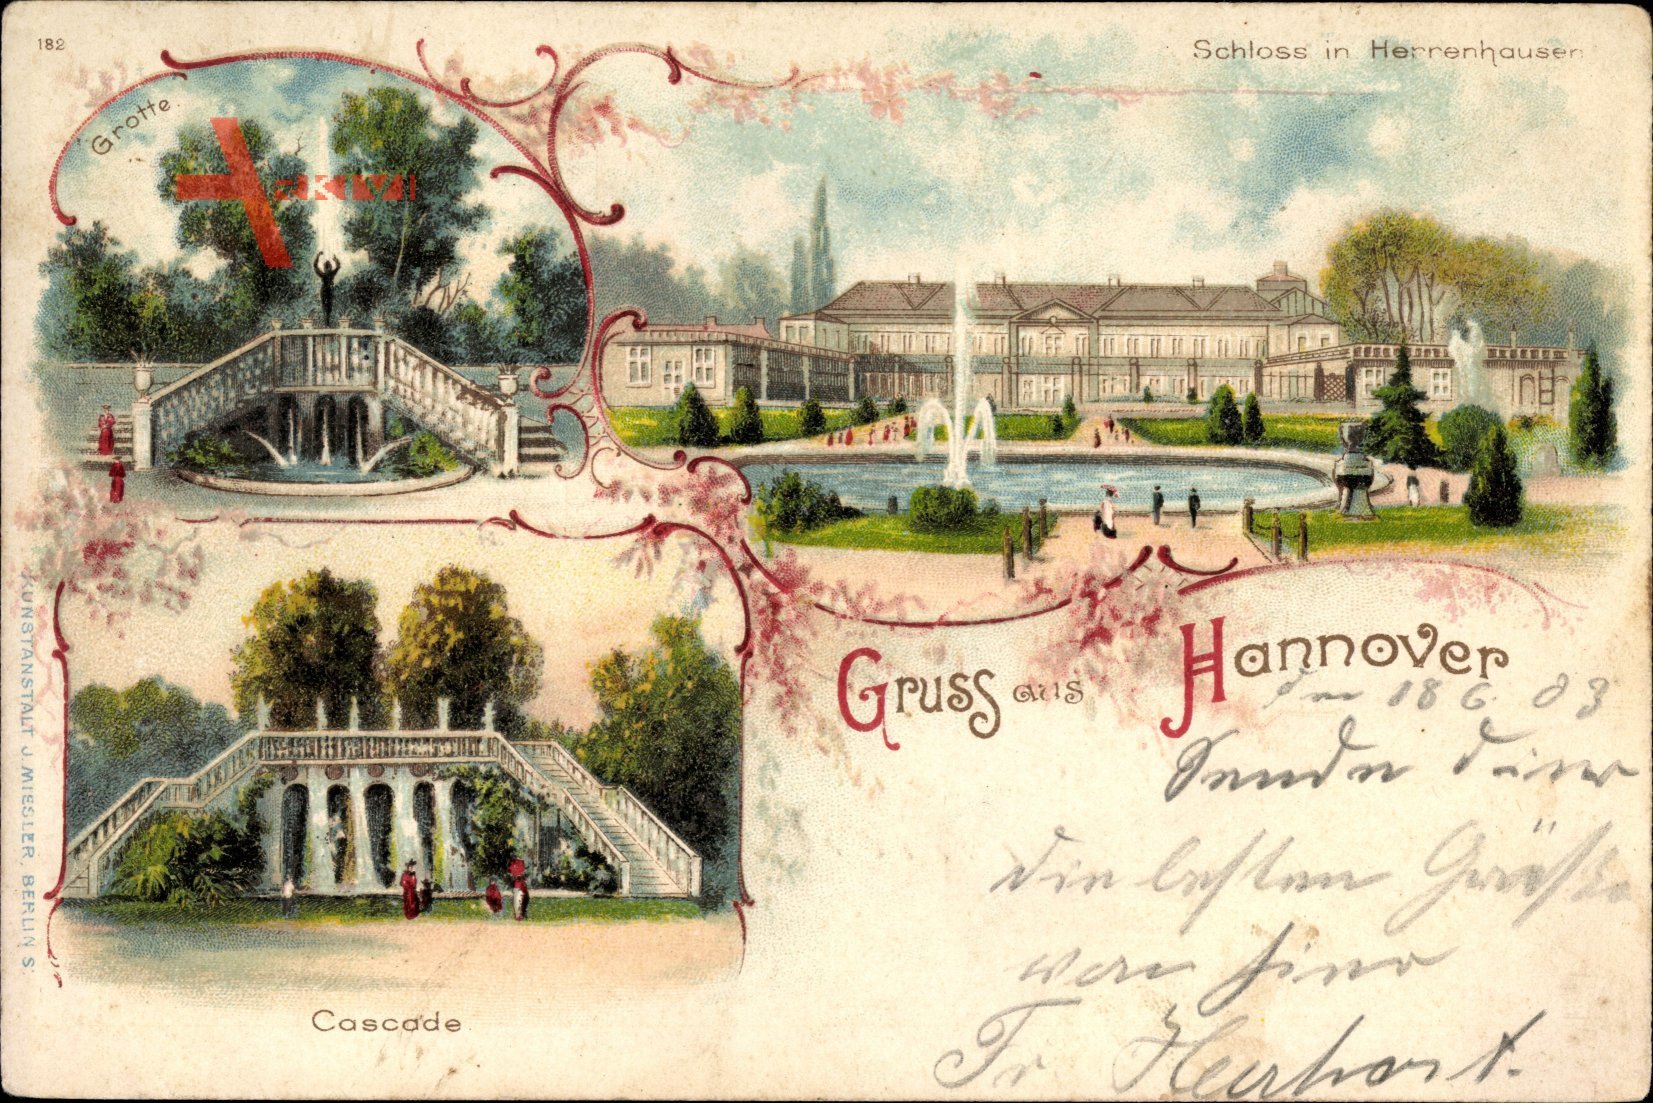 Hannover in Niedersachsen, Schloss in Herrenhausen, KasKade, Grotte